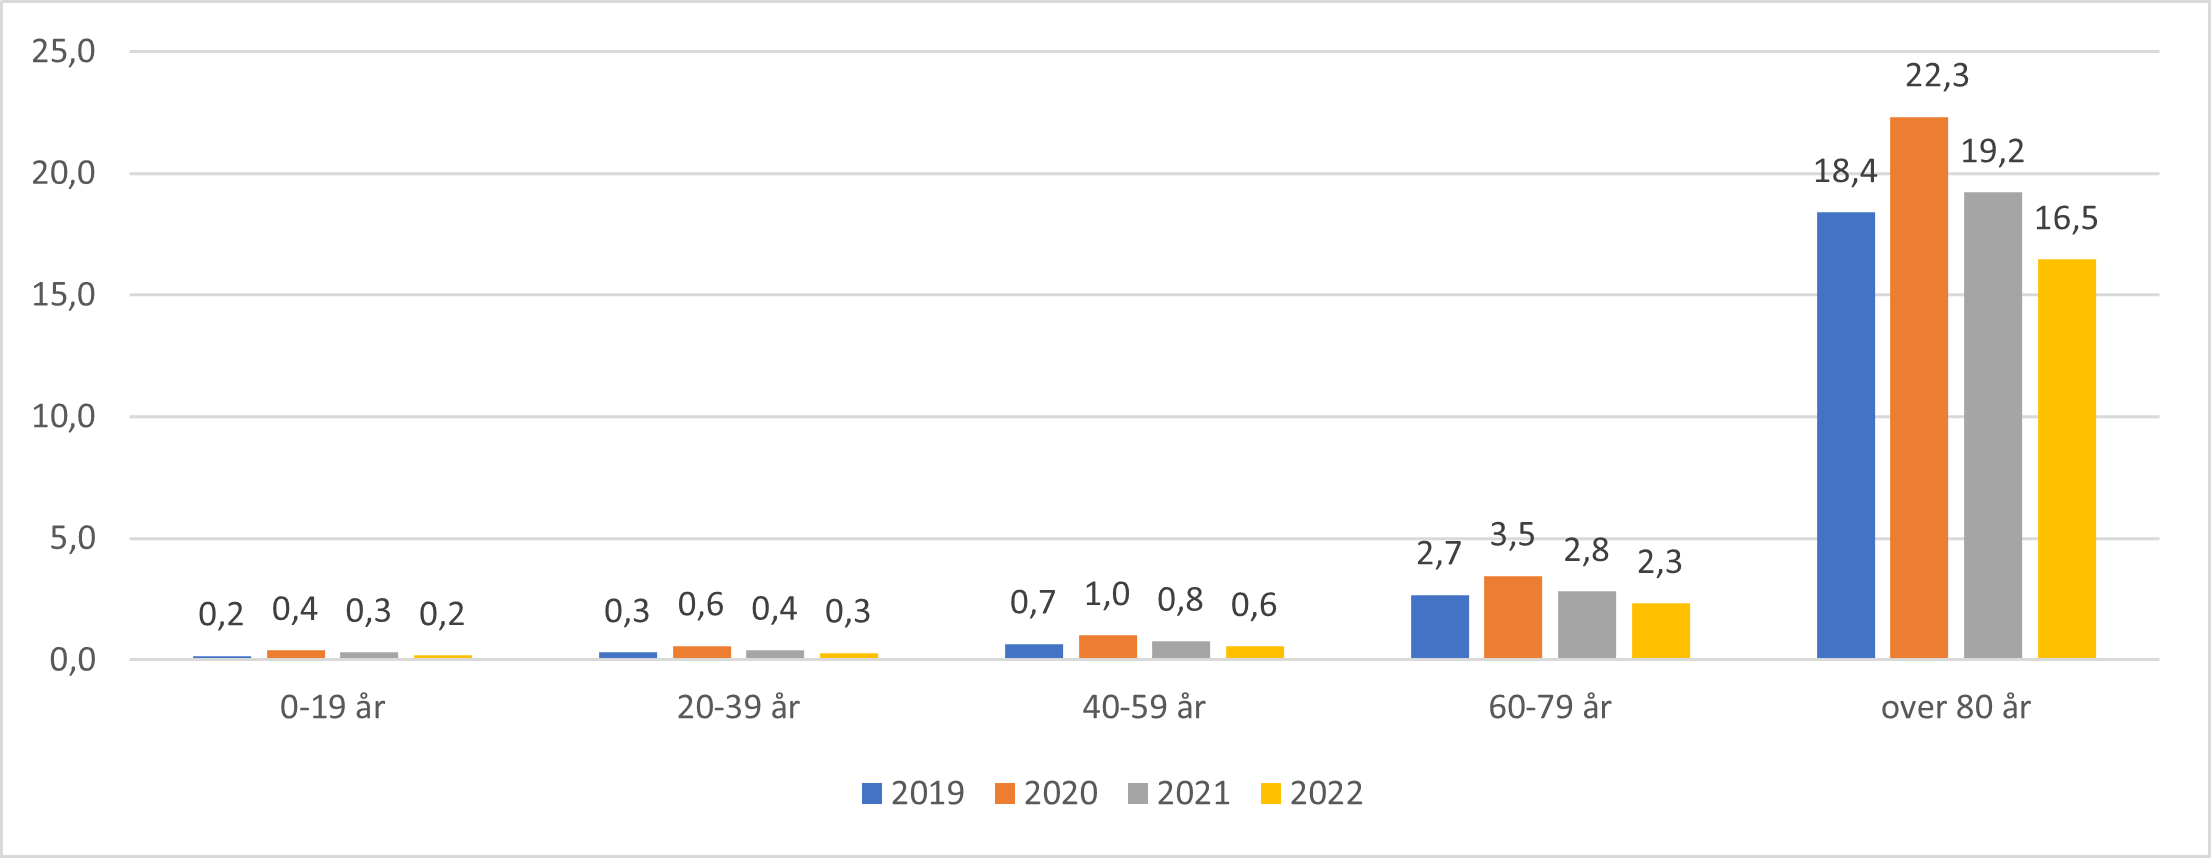 Antall sykebesøk av fastlege per 100 innbygger for aldersgrupper, 2019-2022.